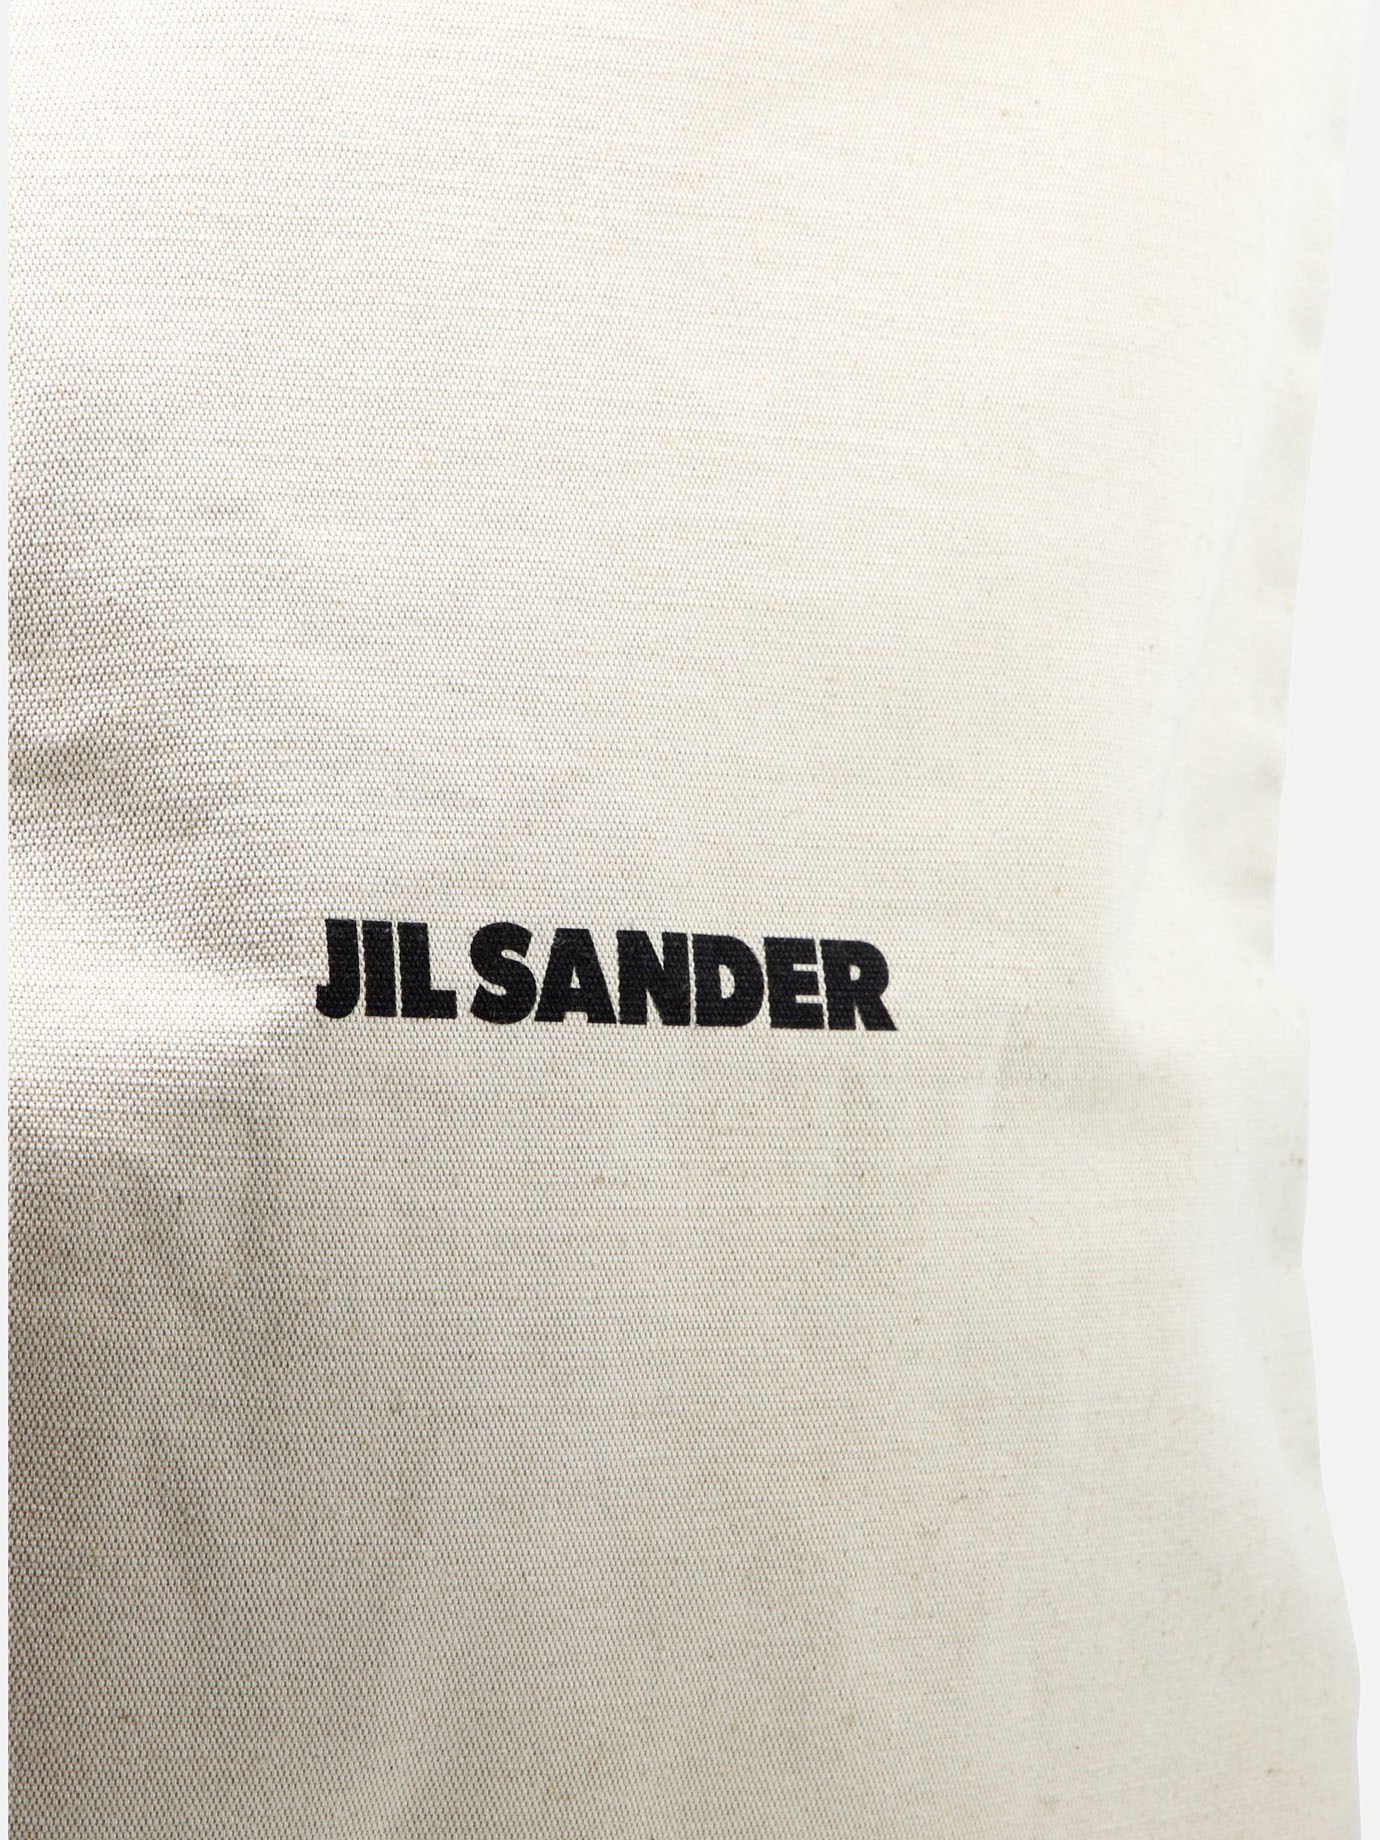  Large  shoulder bag by Jil Sander